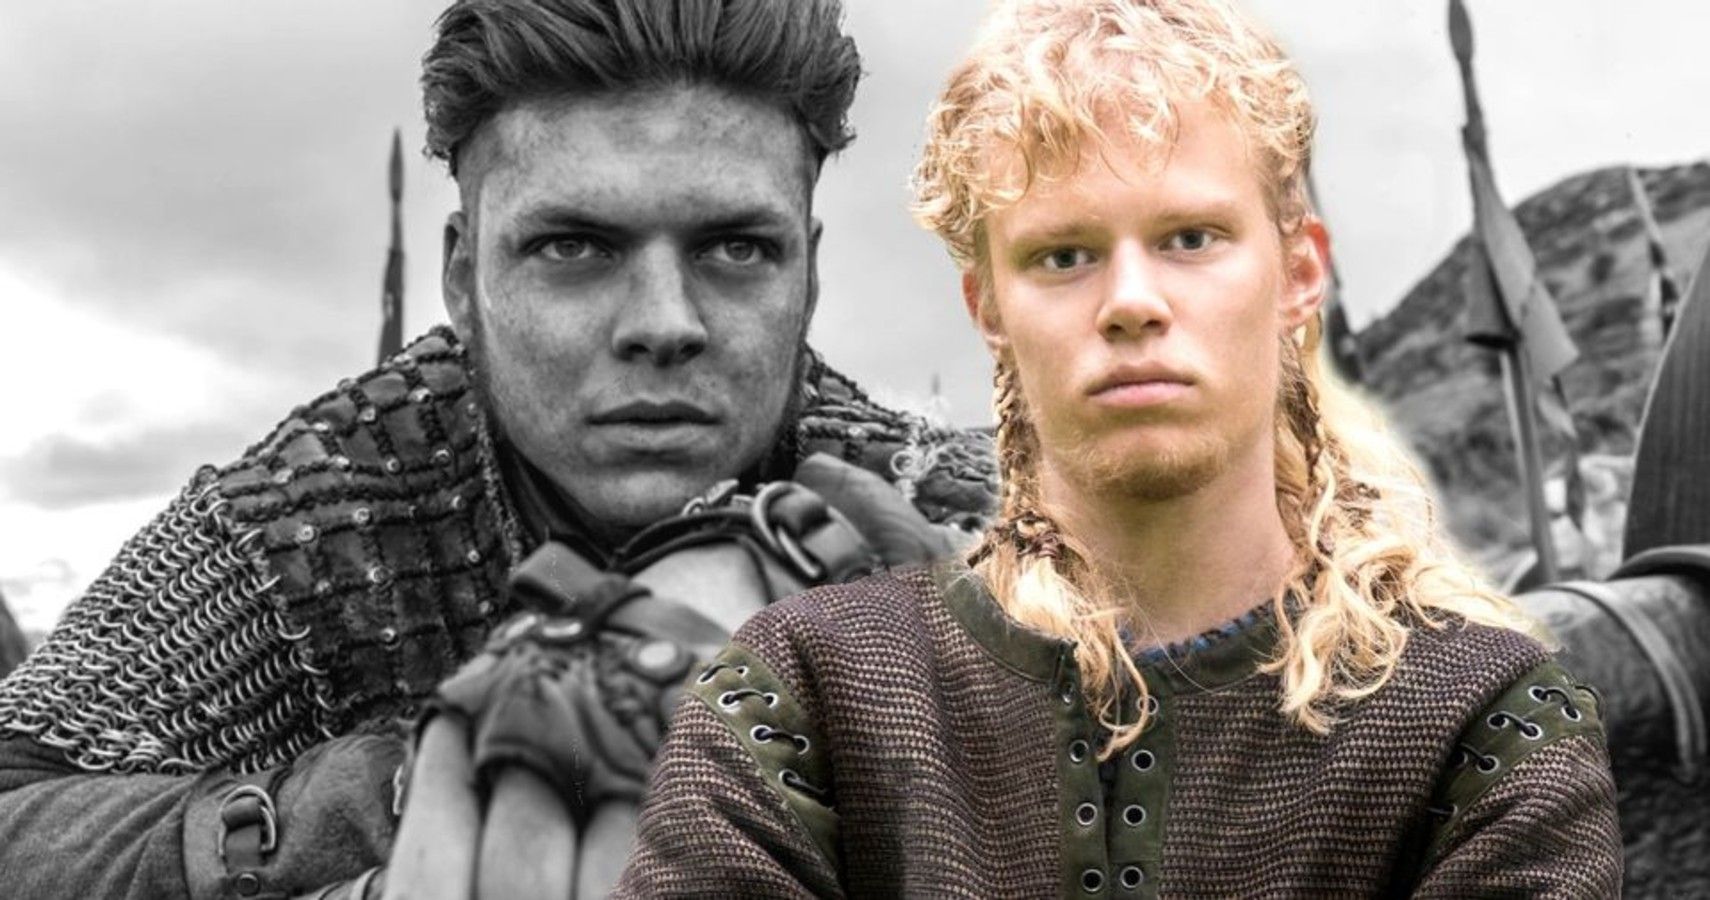 Lo peor de cada personaje principal de Vikings